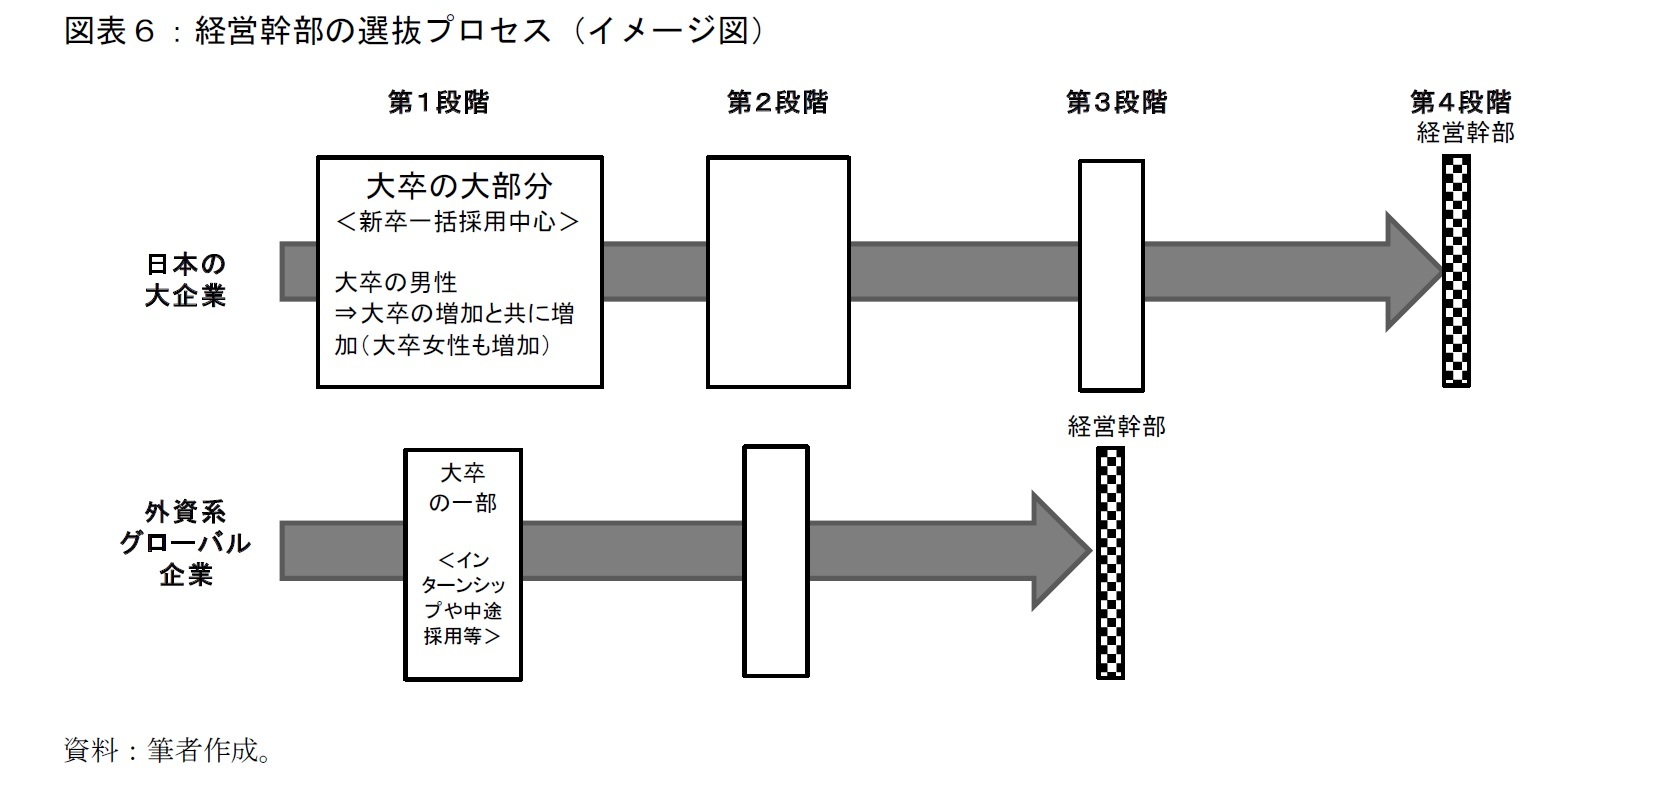 図表６：経営幹部の選抜プロセス（イメージ図）